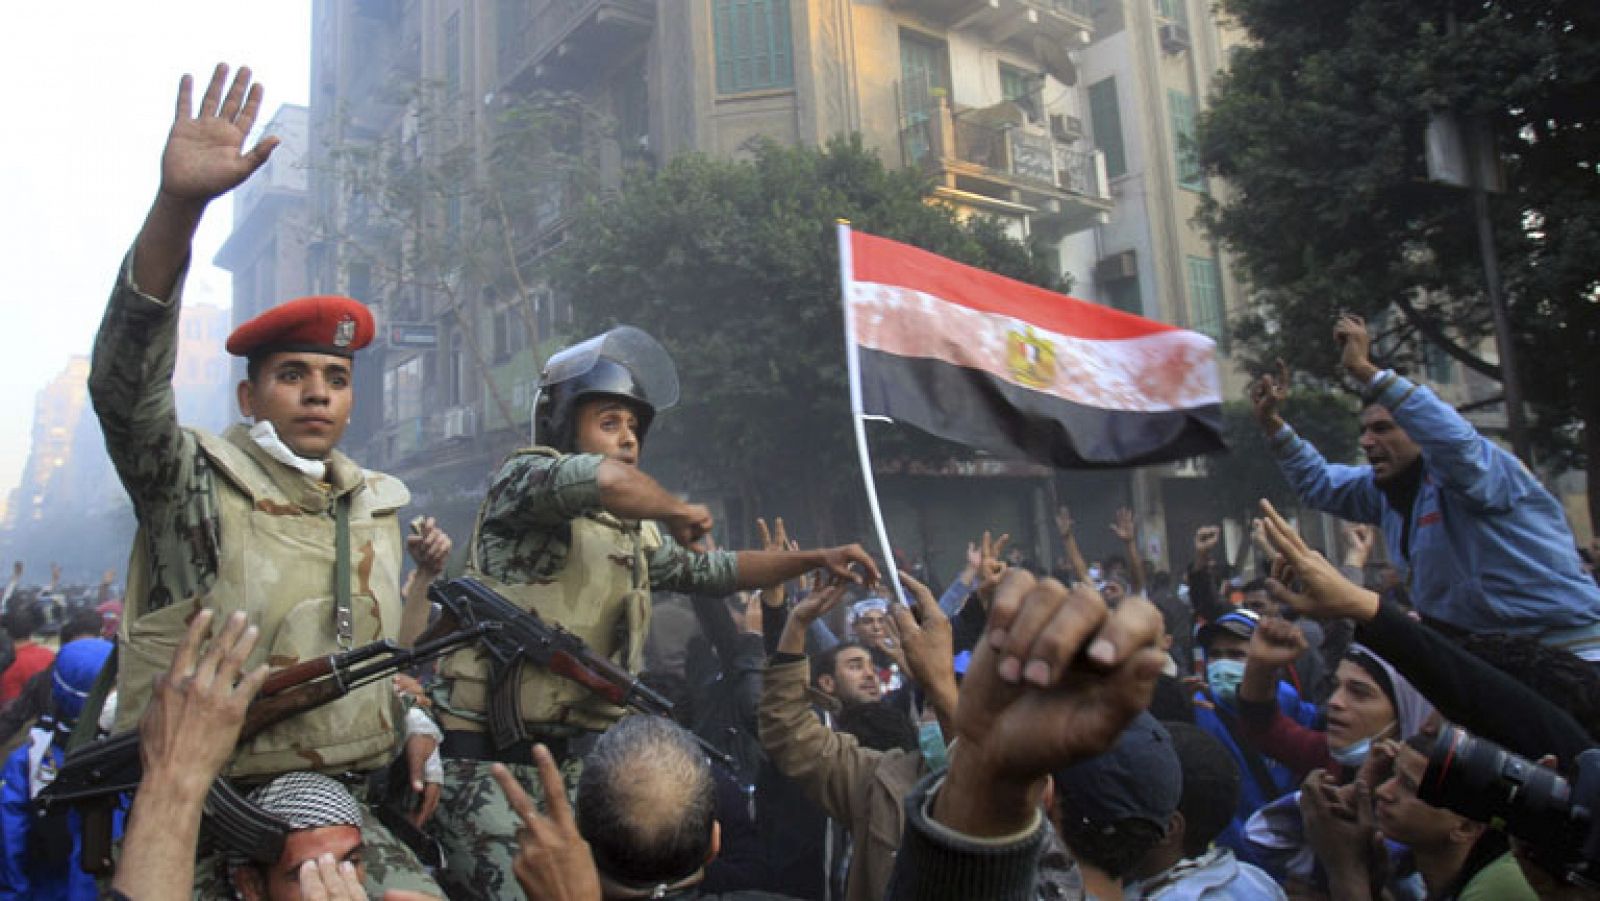 La Junta Militar egipcia ha pedido disculpas a sus ciudadanos por la muerte de manifestantes en los enfrentamientos que se han producido en los últimos seis días.